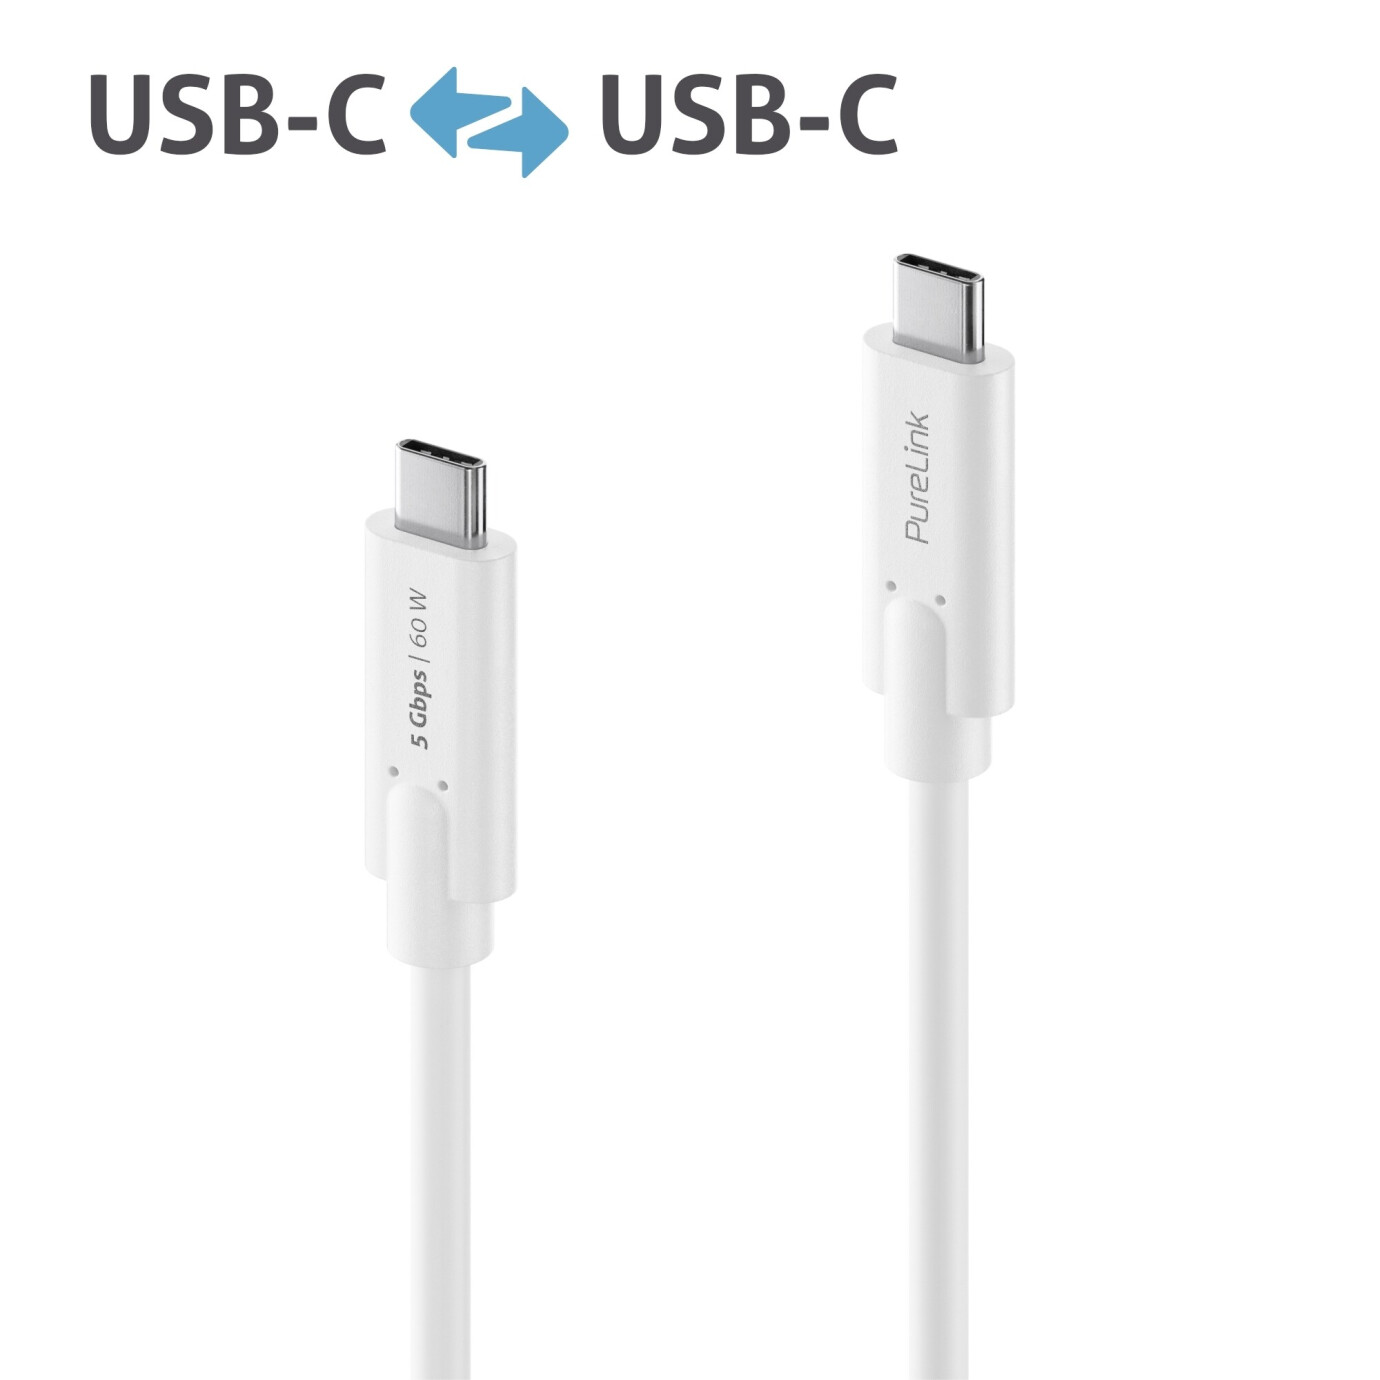 Purelink IS2500-005 USB-C auf USB-C Kabel 0,50m weiß